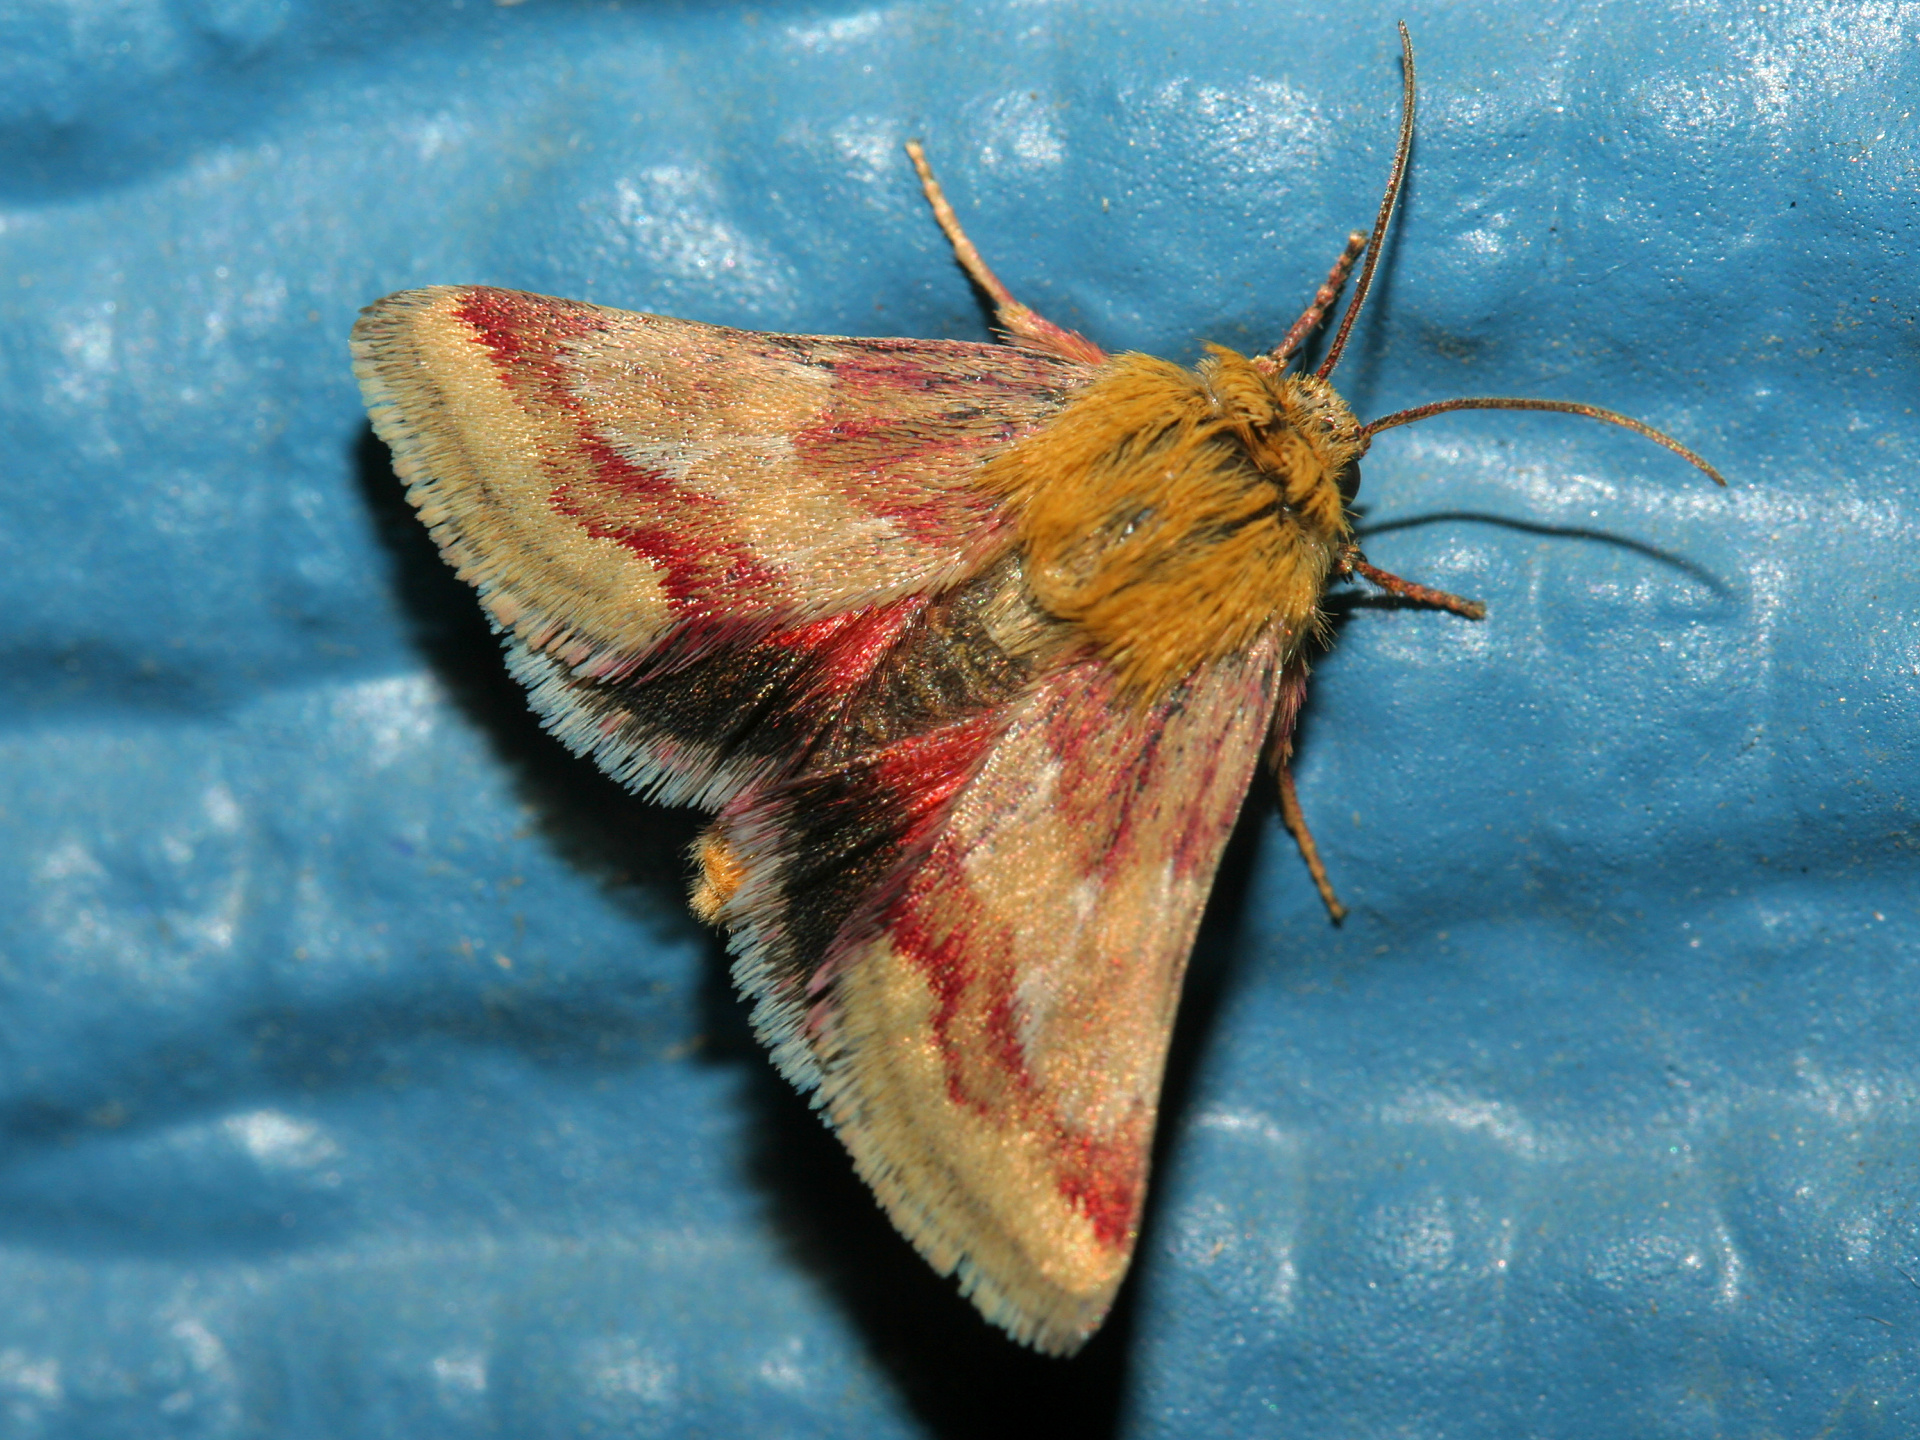 Schinia roseitincta (Podróże » USA: Epopeja Czejeńska » Zwierzęta » Owady » Motyle i ćmy » Noctuidae)